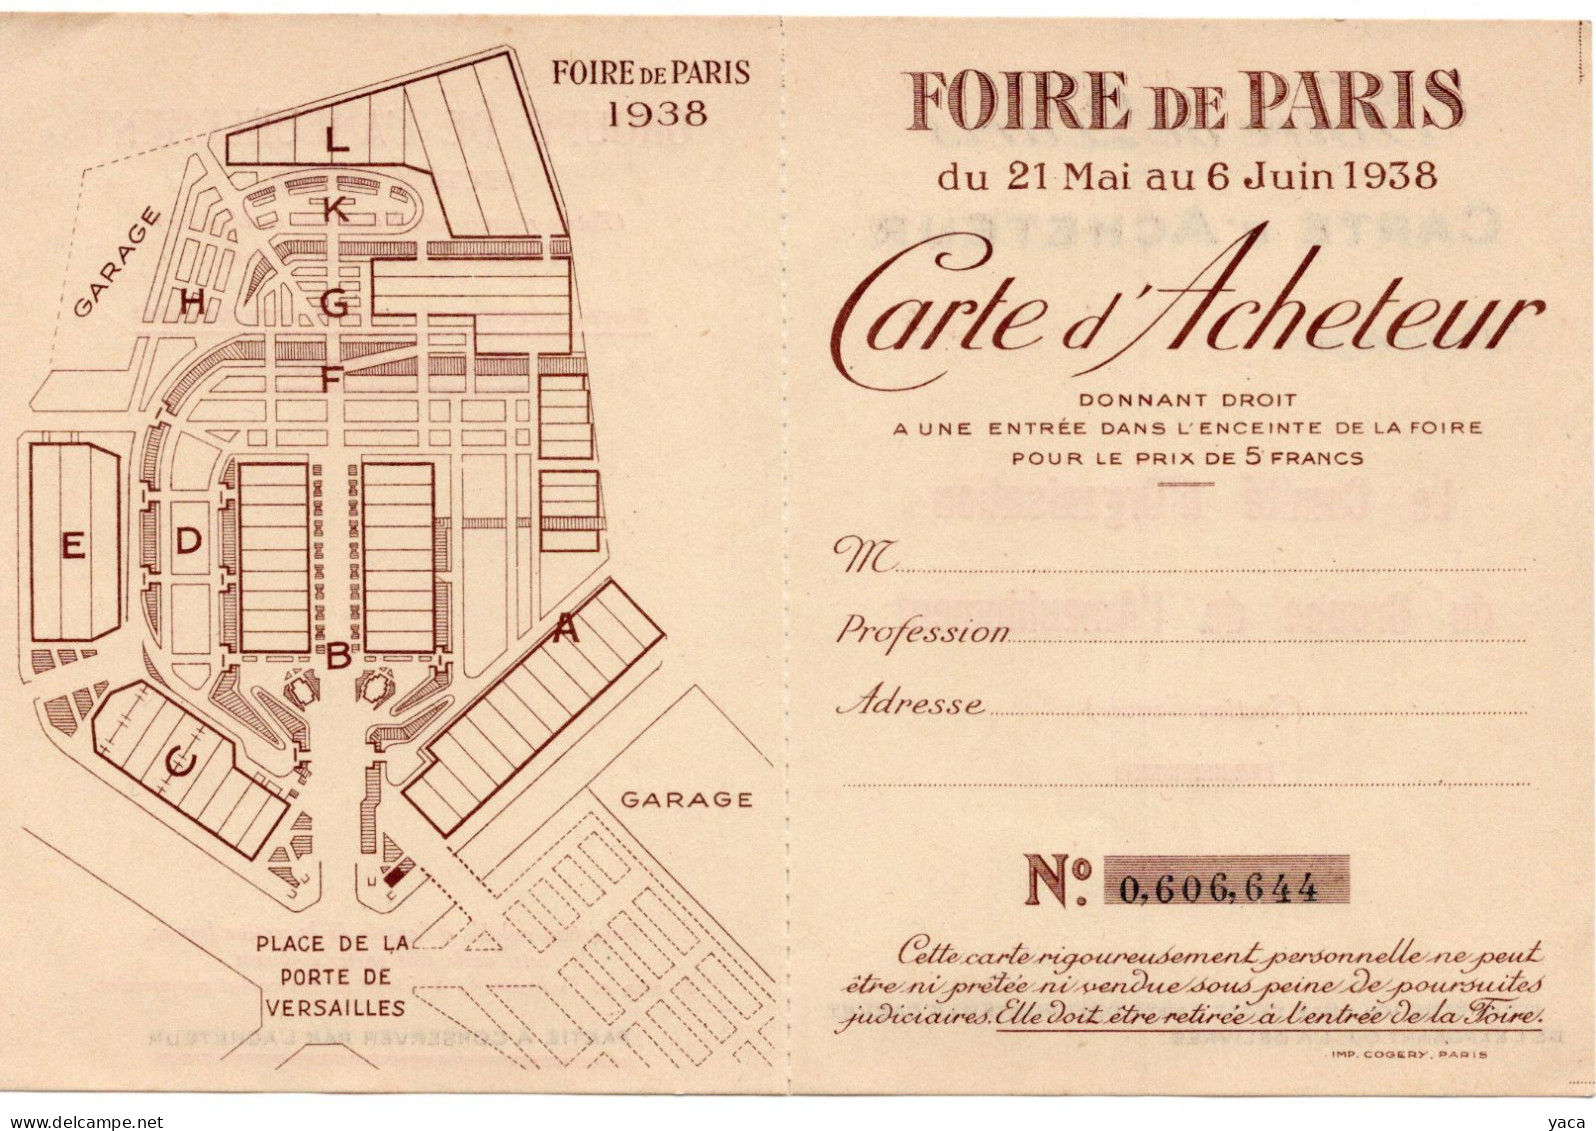 Foire De Paris 1938 - Carte Acheteur - Tickets - Vouchers